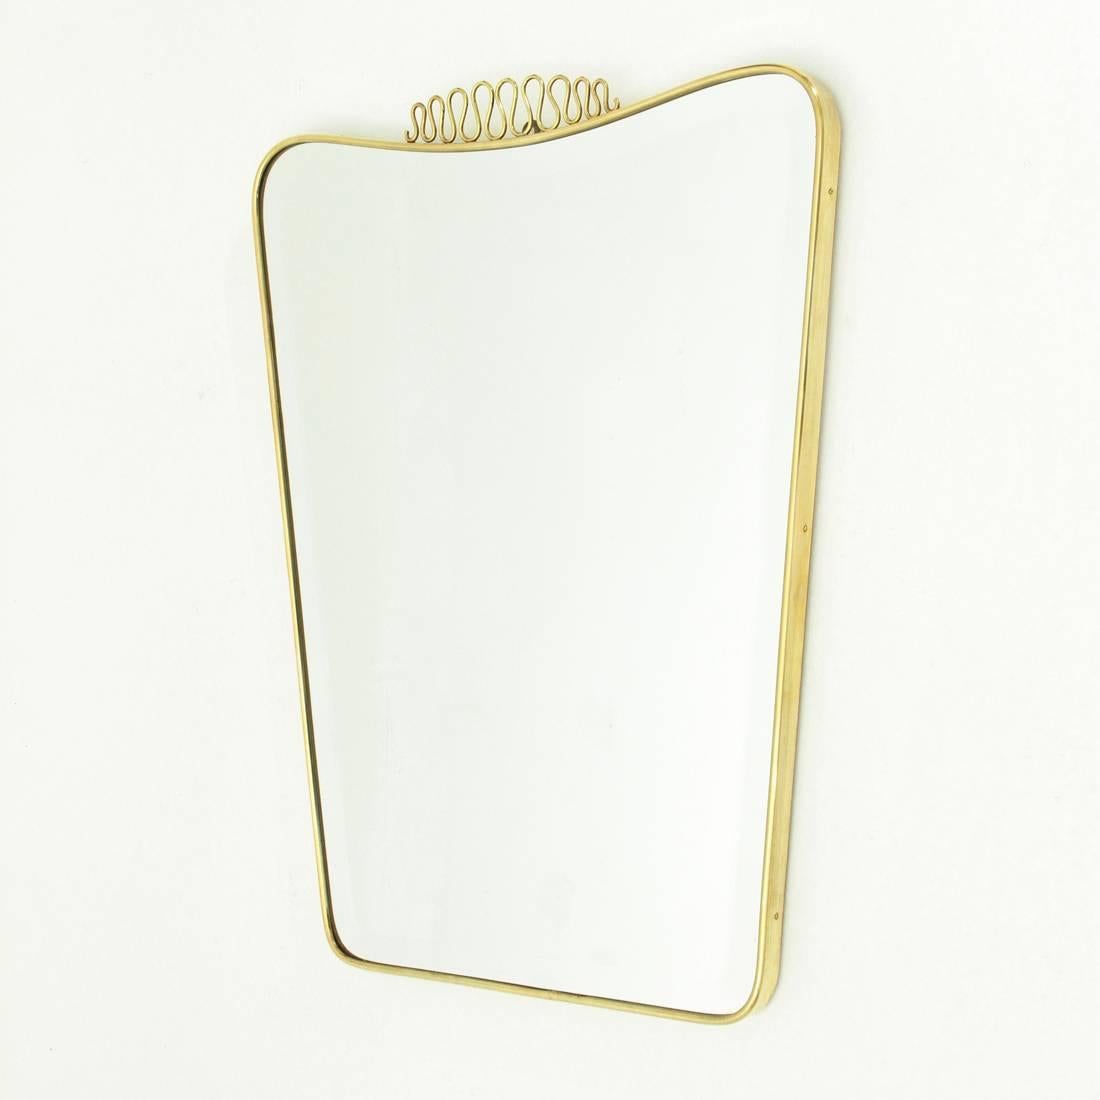 Mid-20th Century Italian Midcentury Brass Frame Mirror, 1950s